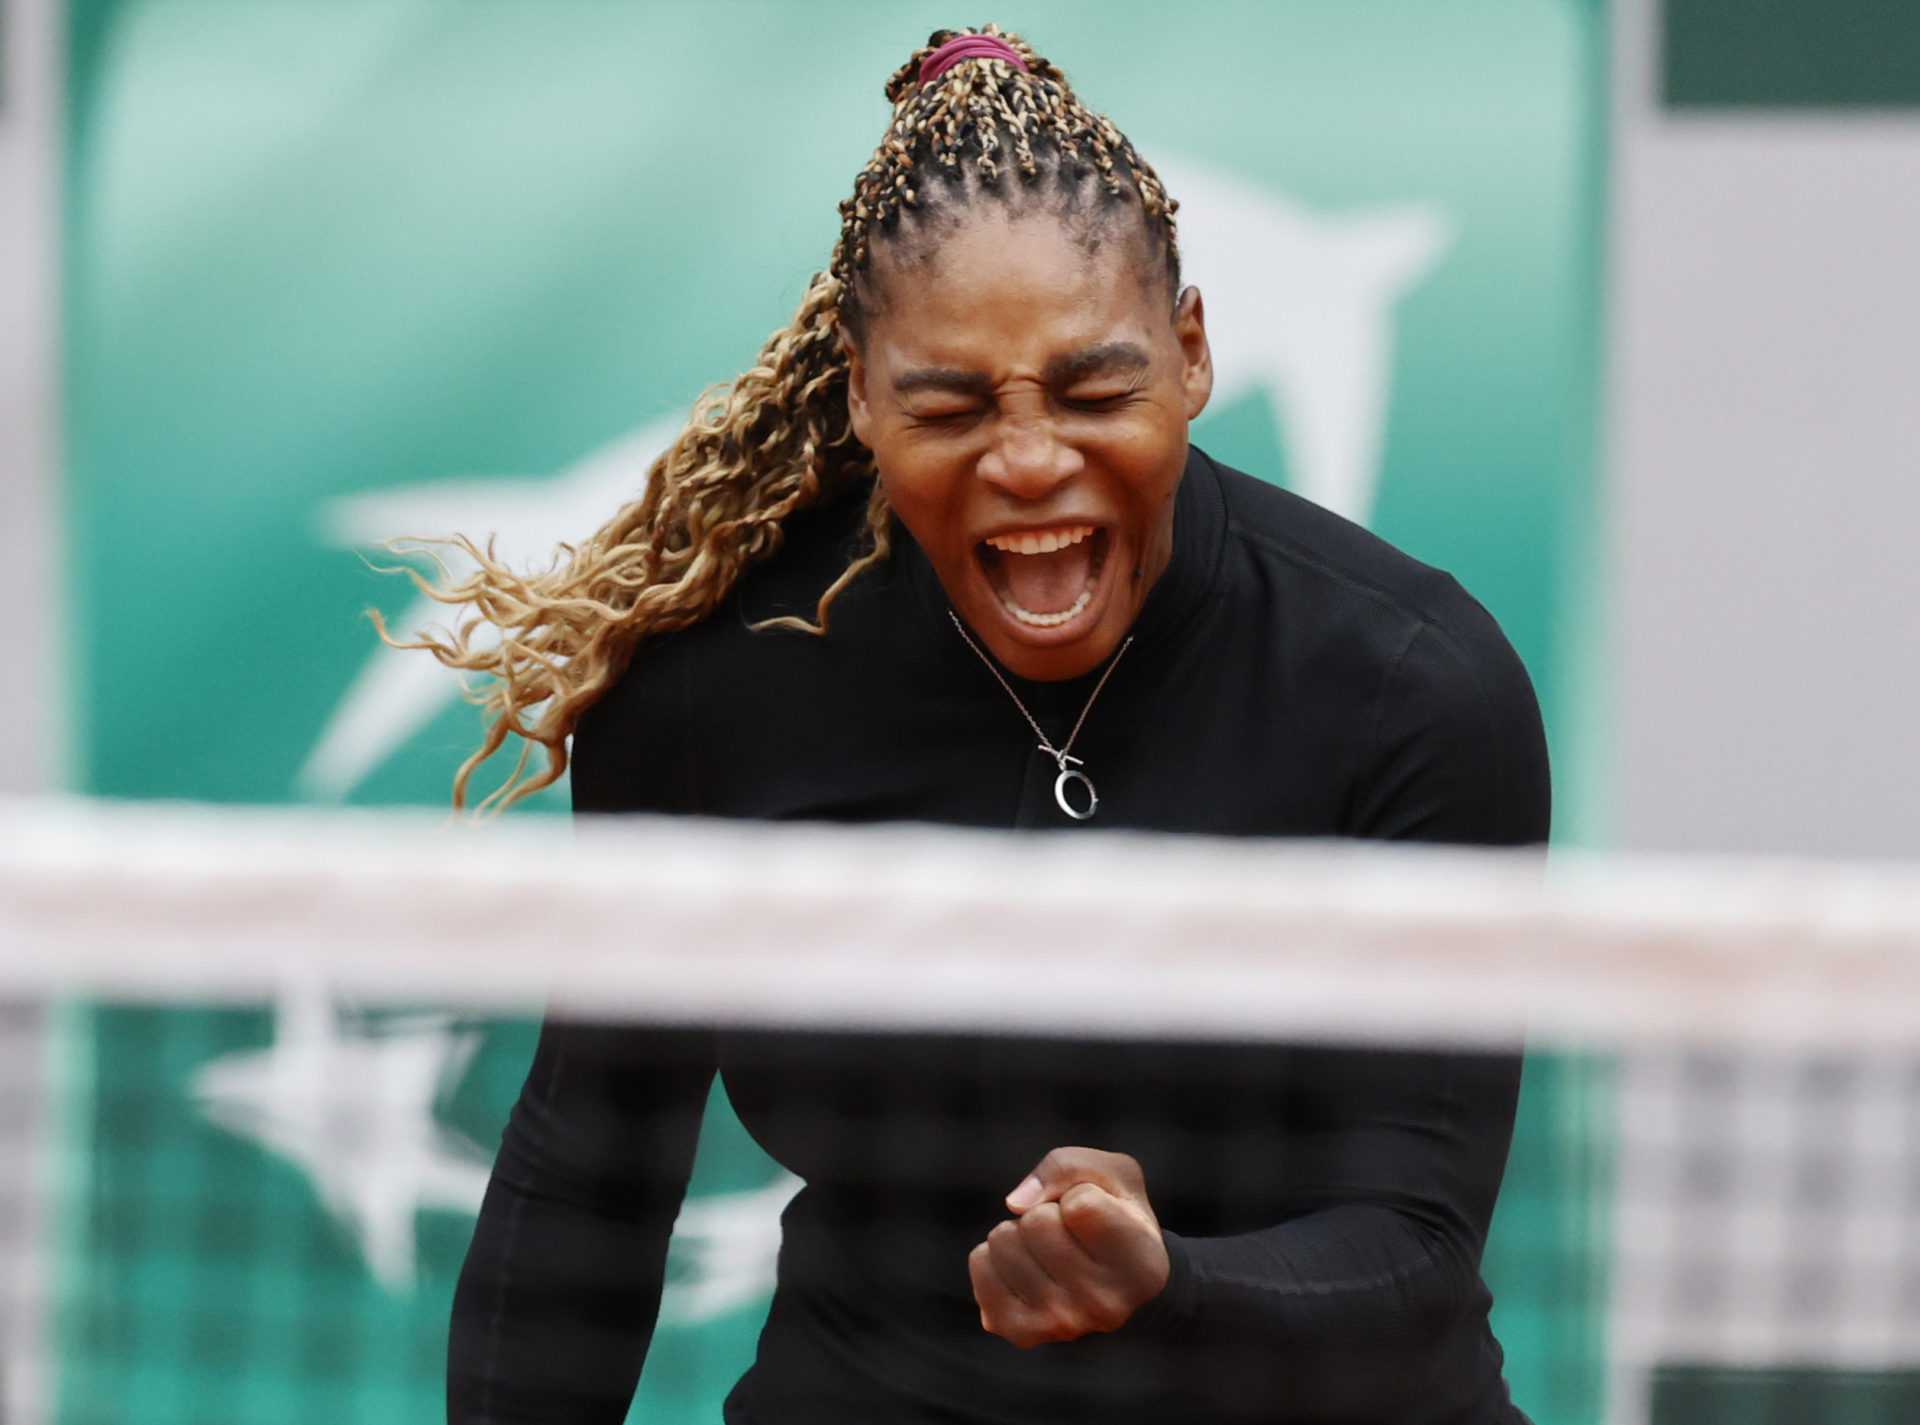 CONFIRMÉ: Serena Williams poursuivra sa chasse au 24e titre du Grand Chelem en 2021